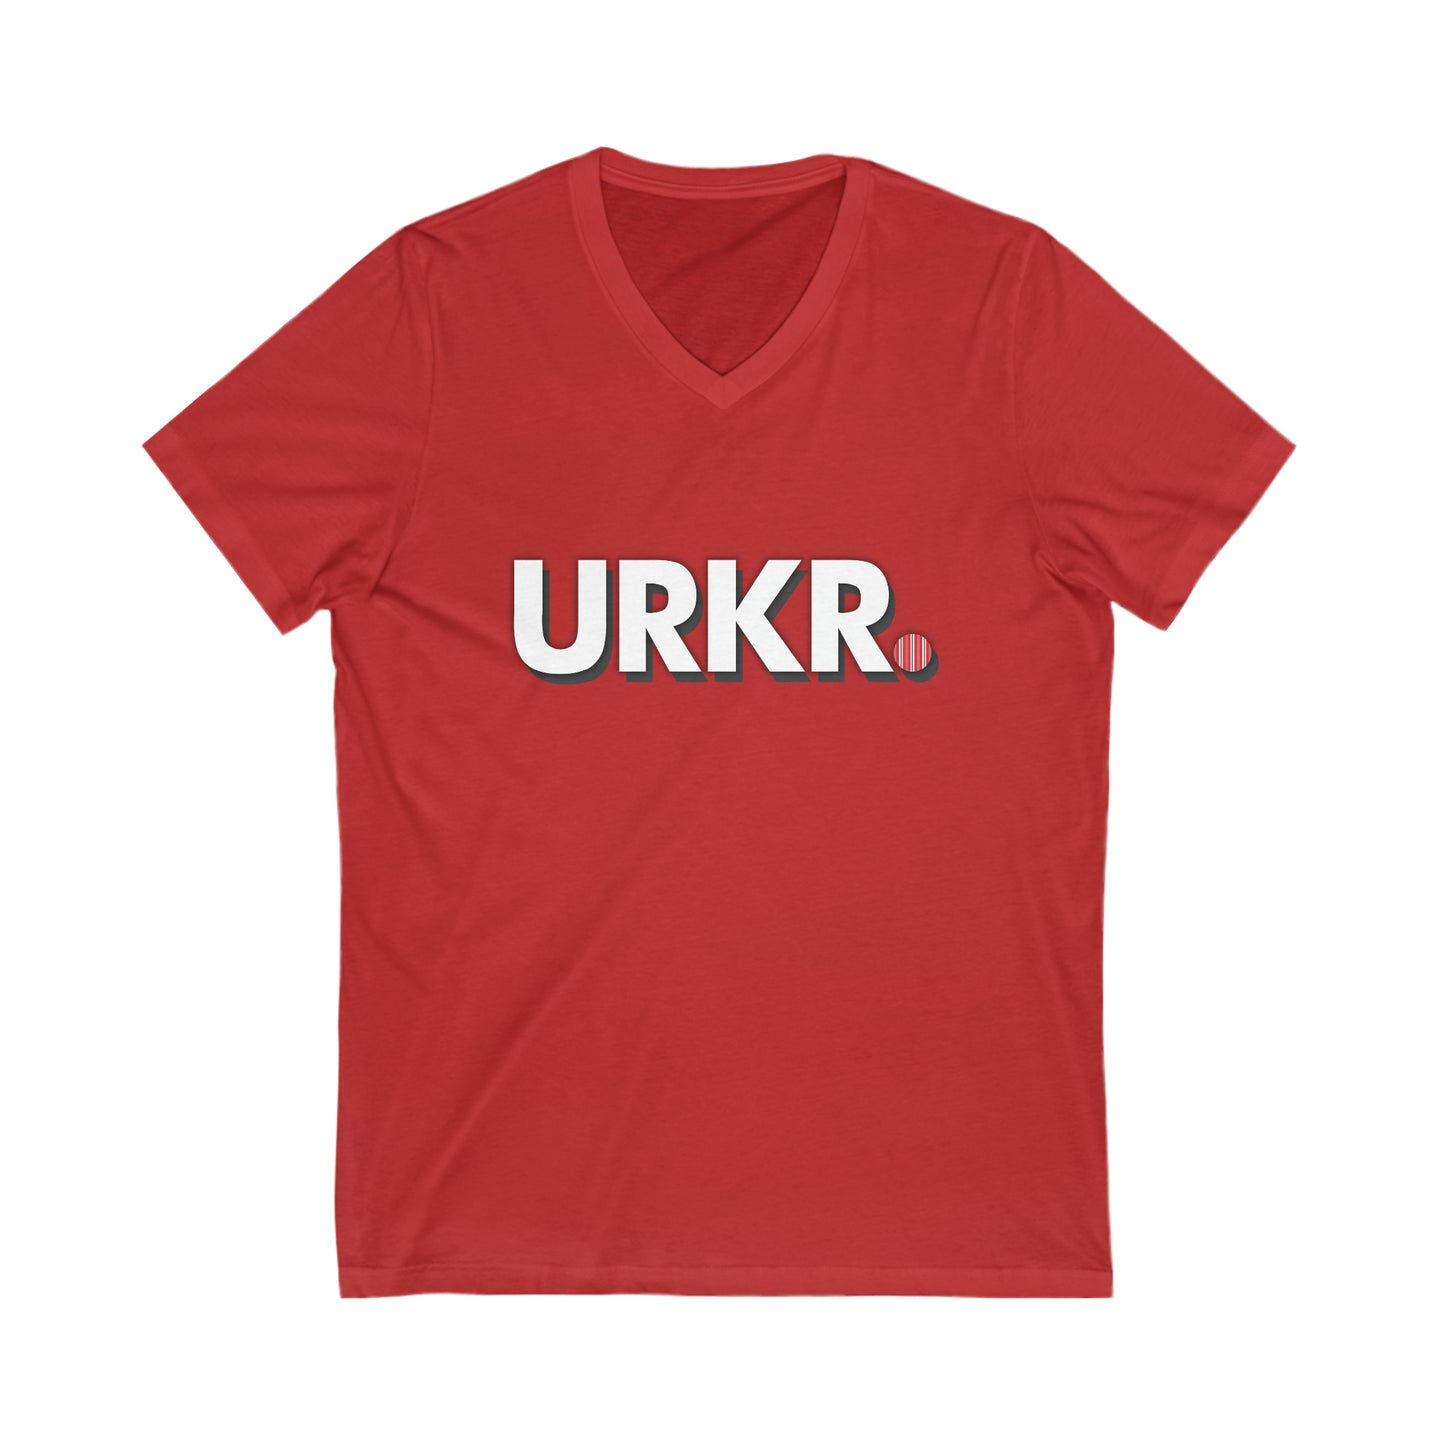 URKR. V-hals T-shirt By JDBexclusive